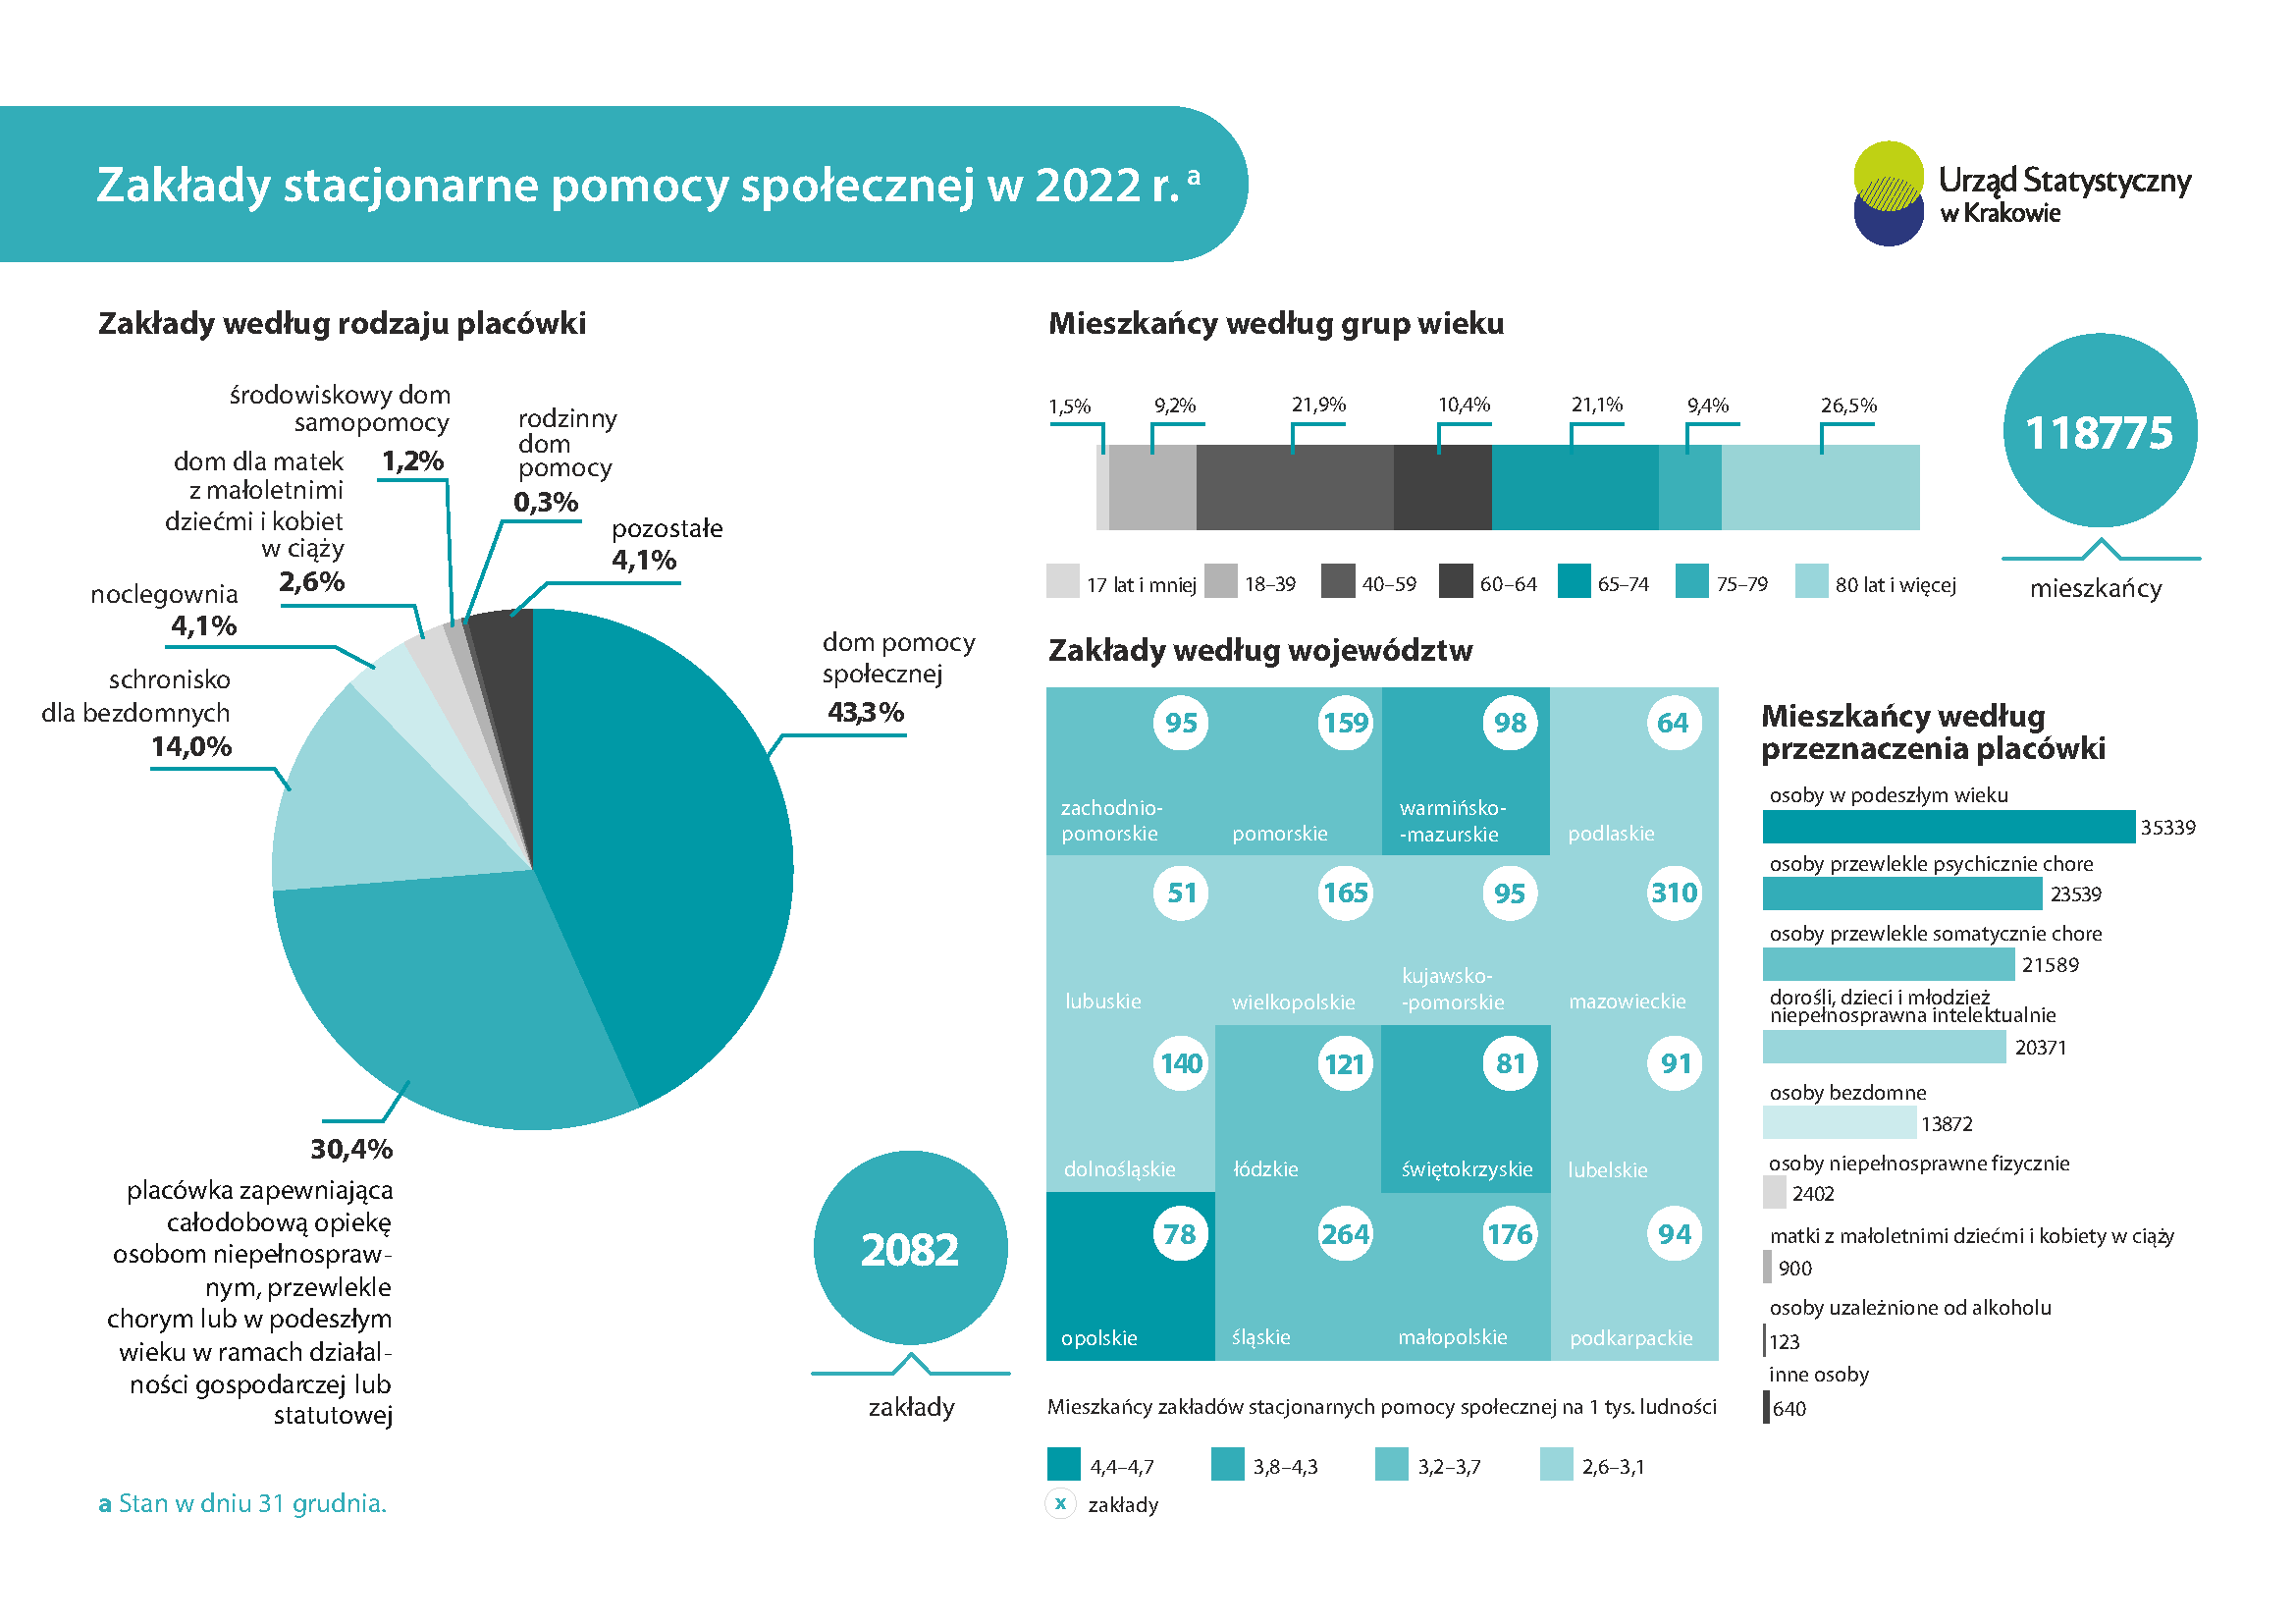 Infografika - Zakłady stacjonarne pomocy spolecznej w 2022 r. - dane do infografiki w pliku xls poniżej